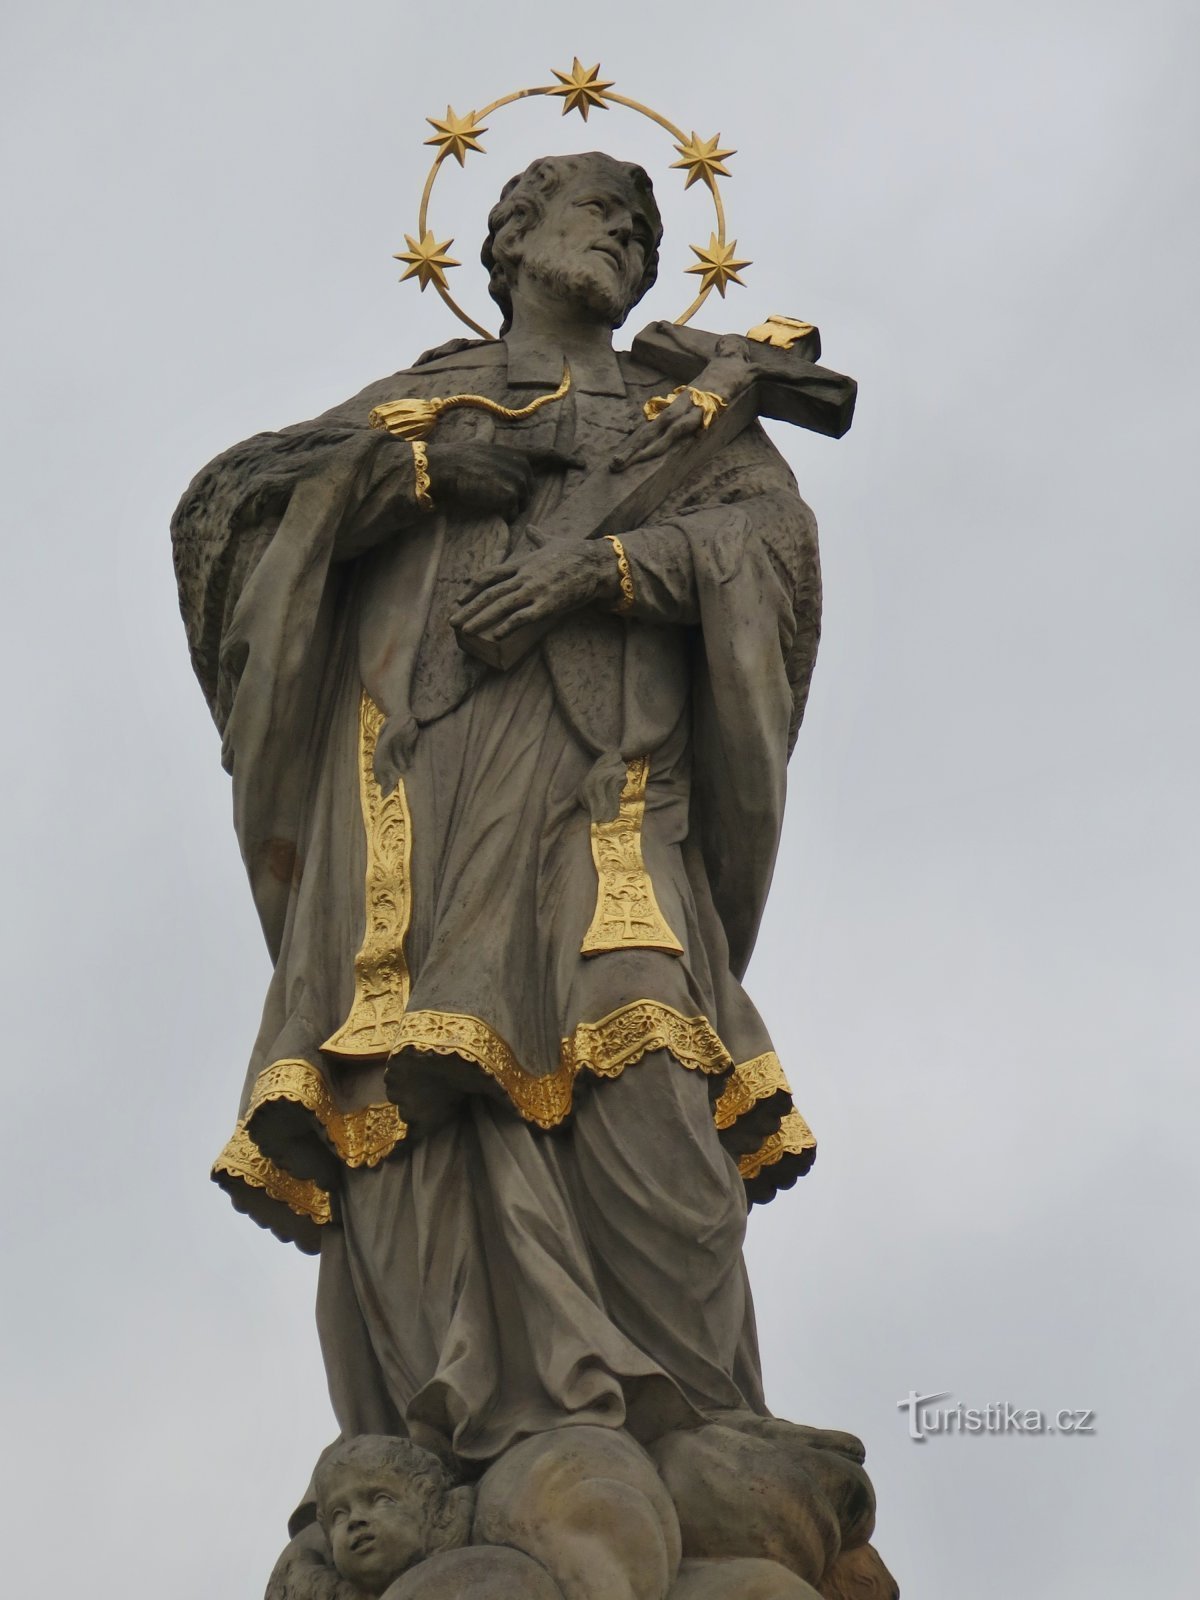 Jevíčko - άγαλμα του Αγ. Γιαν Νεπομούτσκι